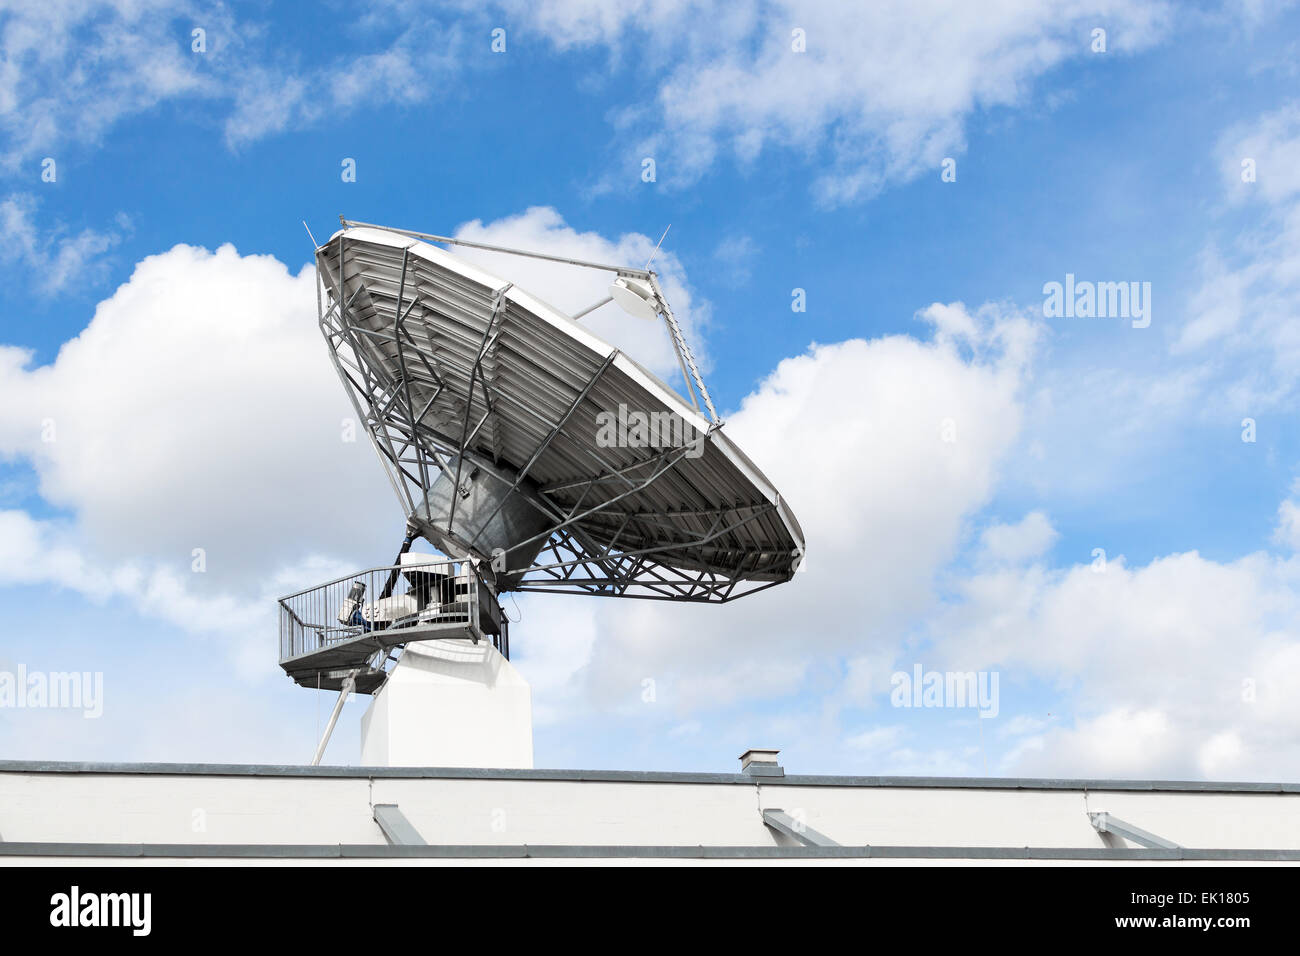 Grand plat parabolique de communication par satellite ou de la station de l'antenne du radar de l'espace observatoire astronomique télescope du signal radio Banque D'Images